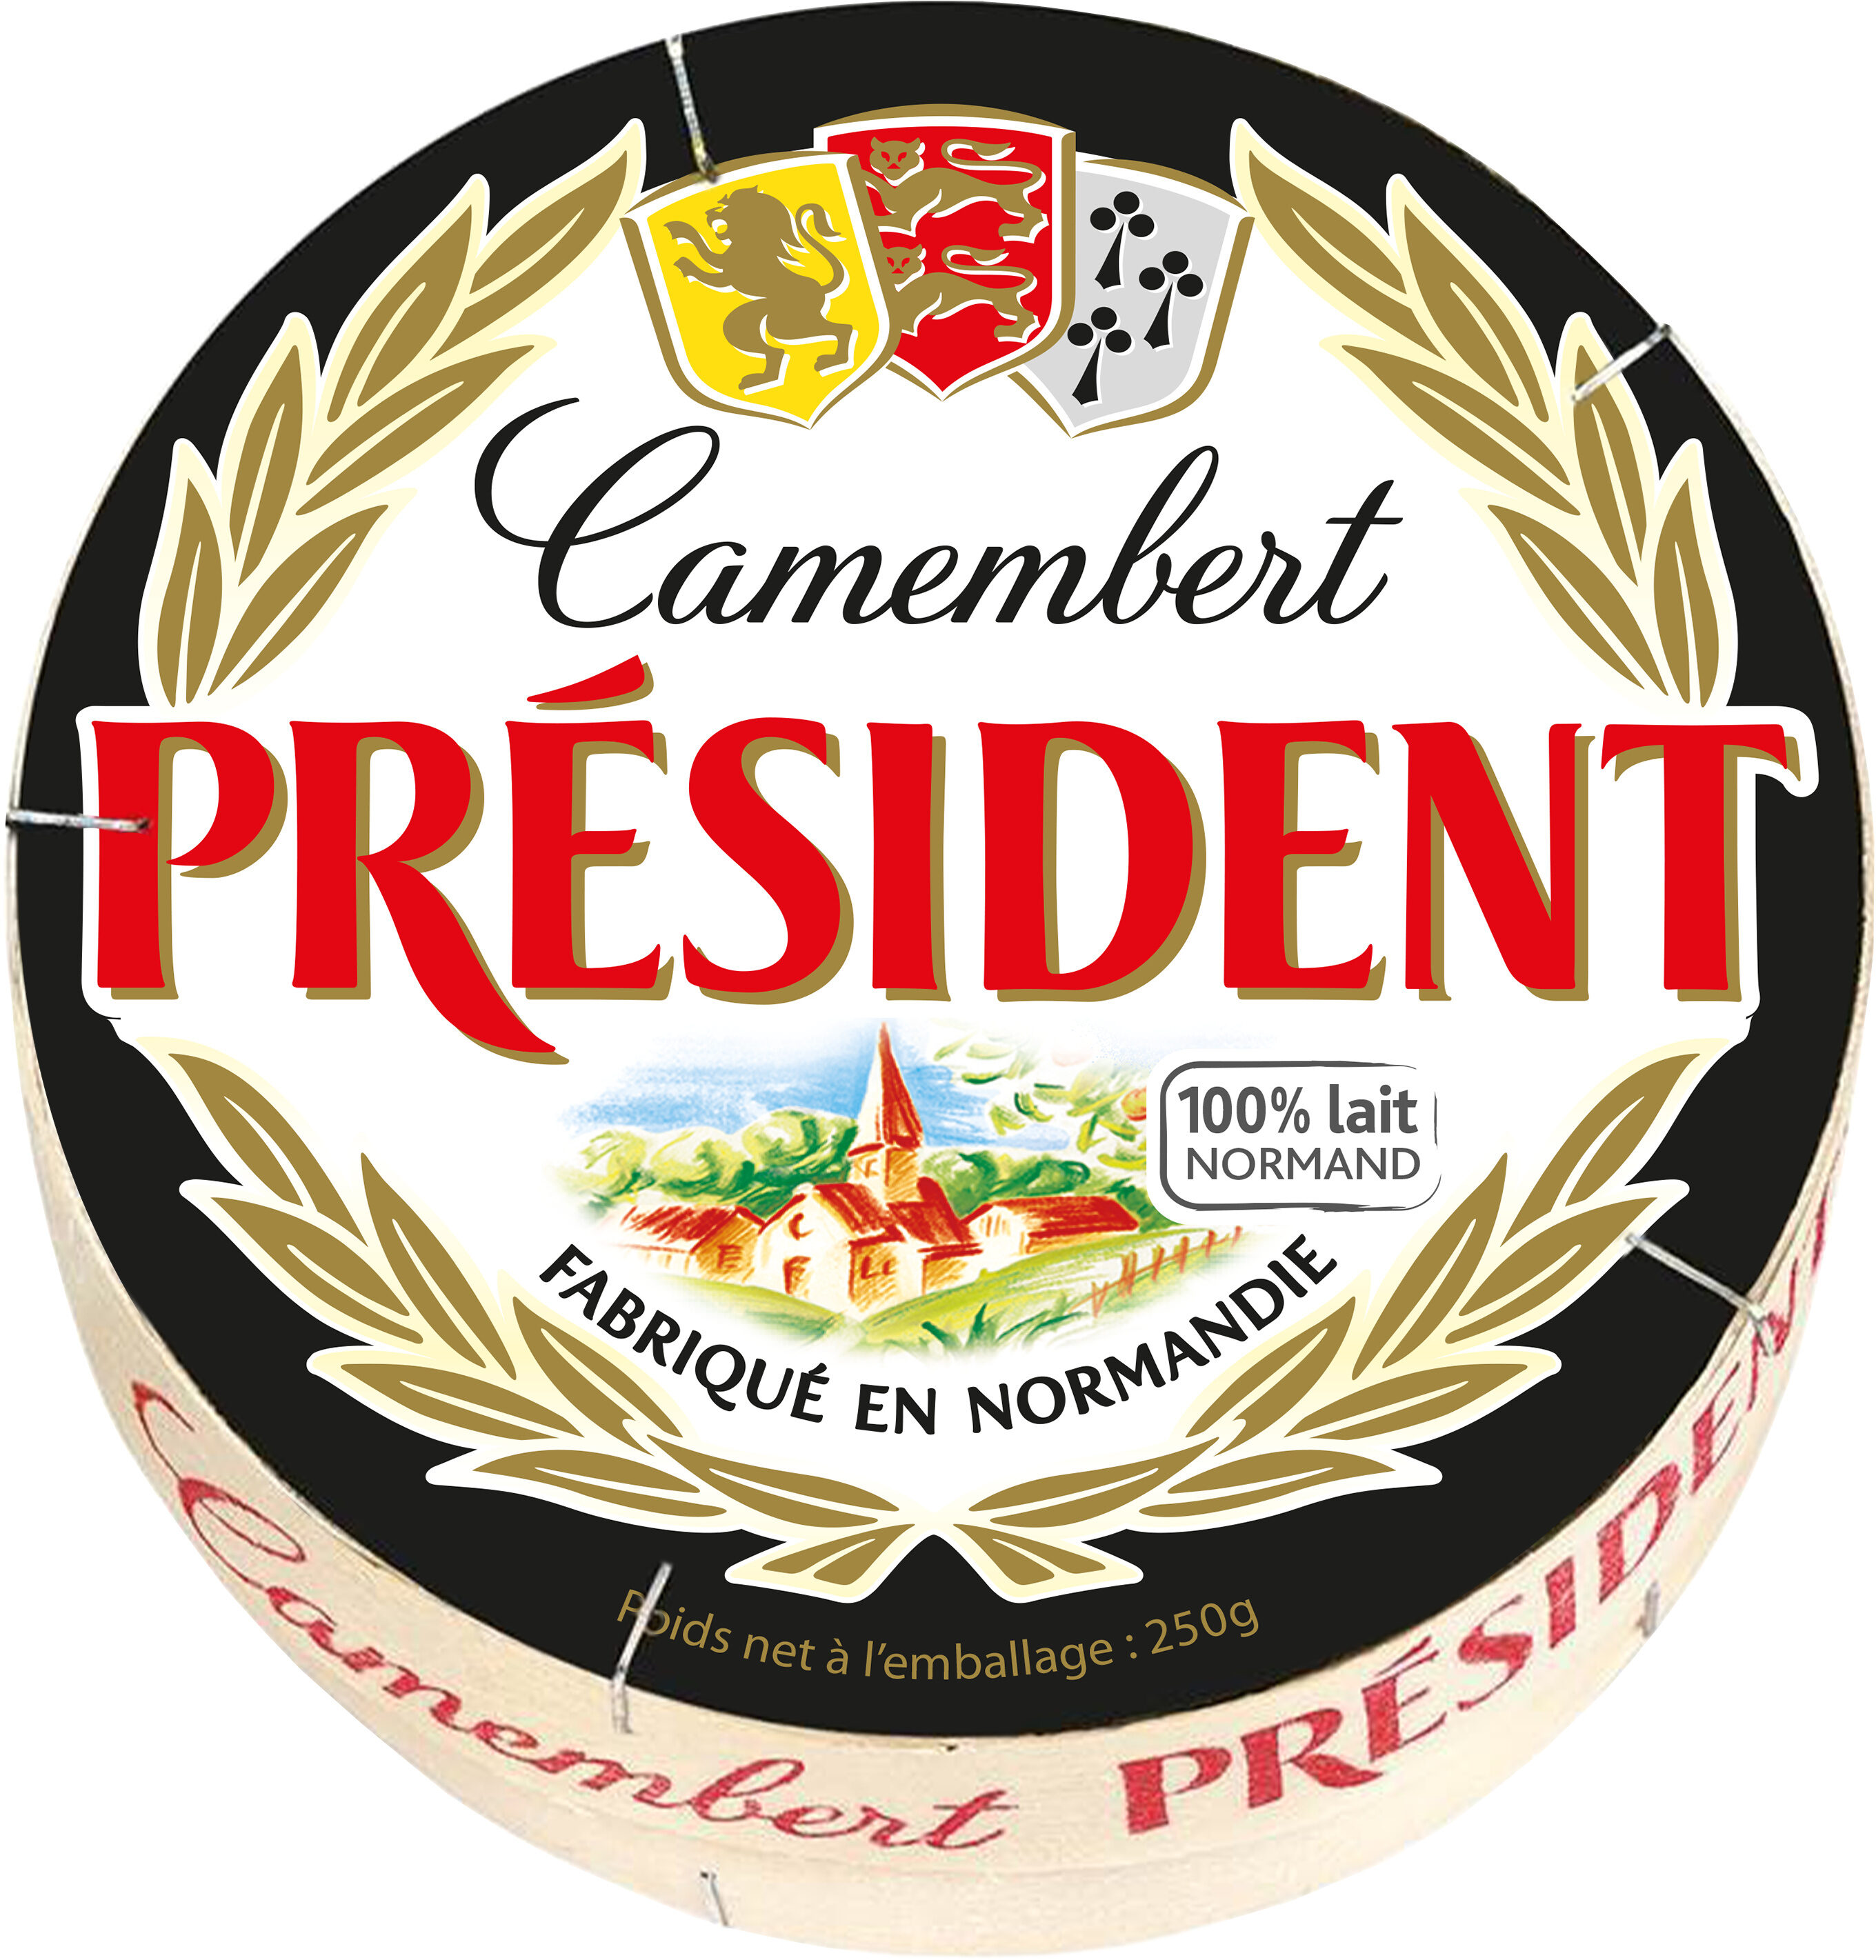 PRESIDENT CAMEMBERT 250g - Product - fr